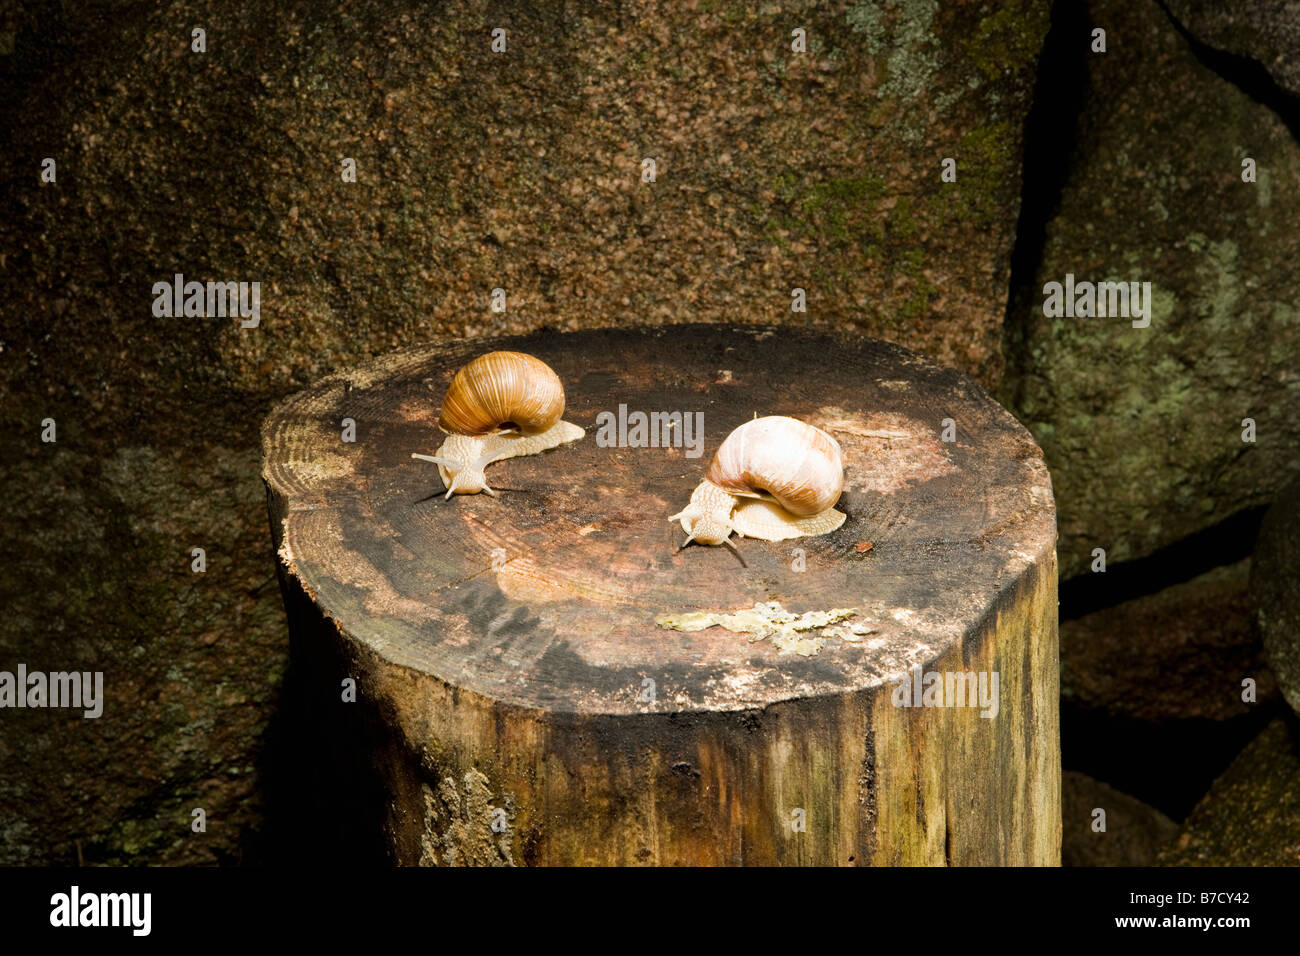 Zwei Landschnecken (Gastropoda) auf einem Baum stumpf Stockfoto